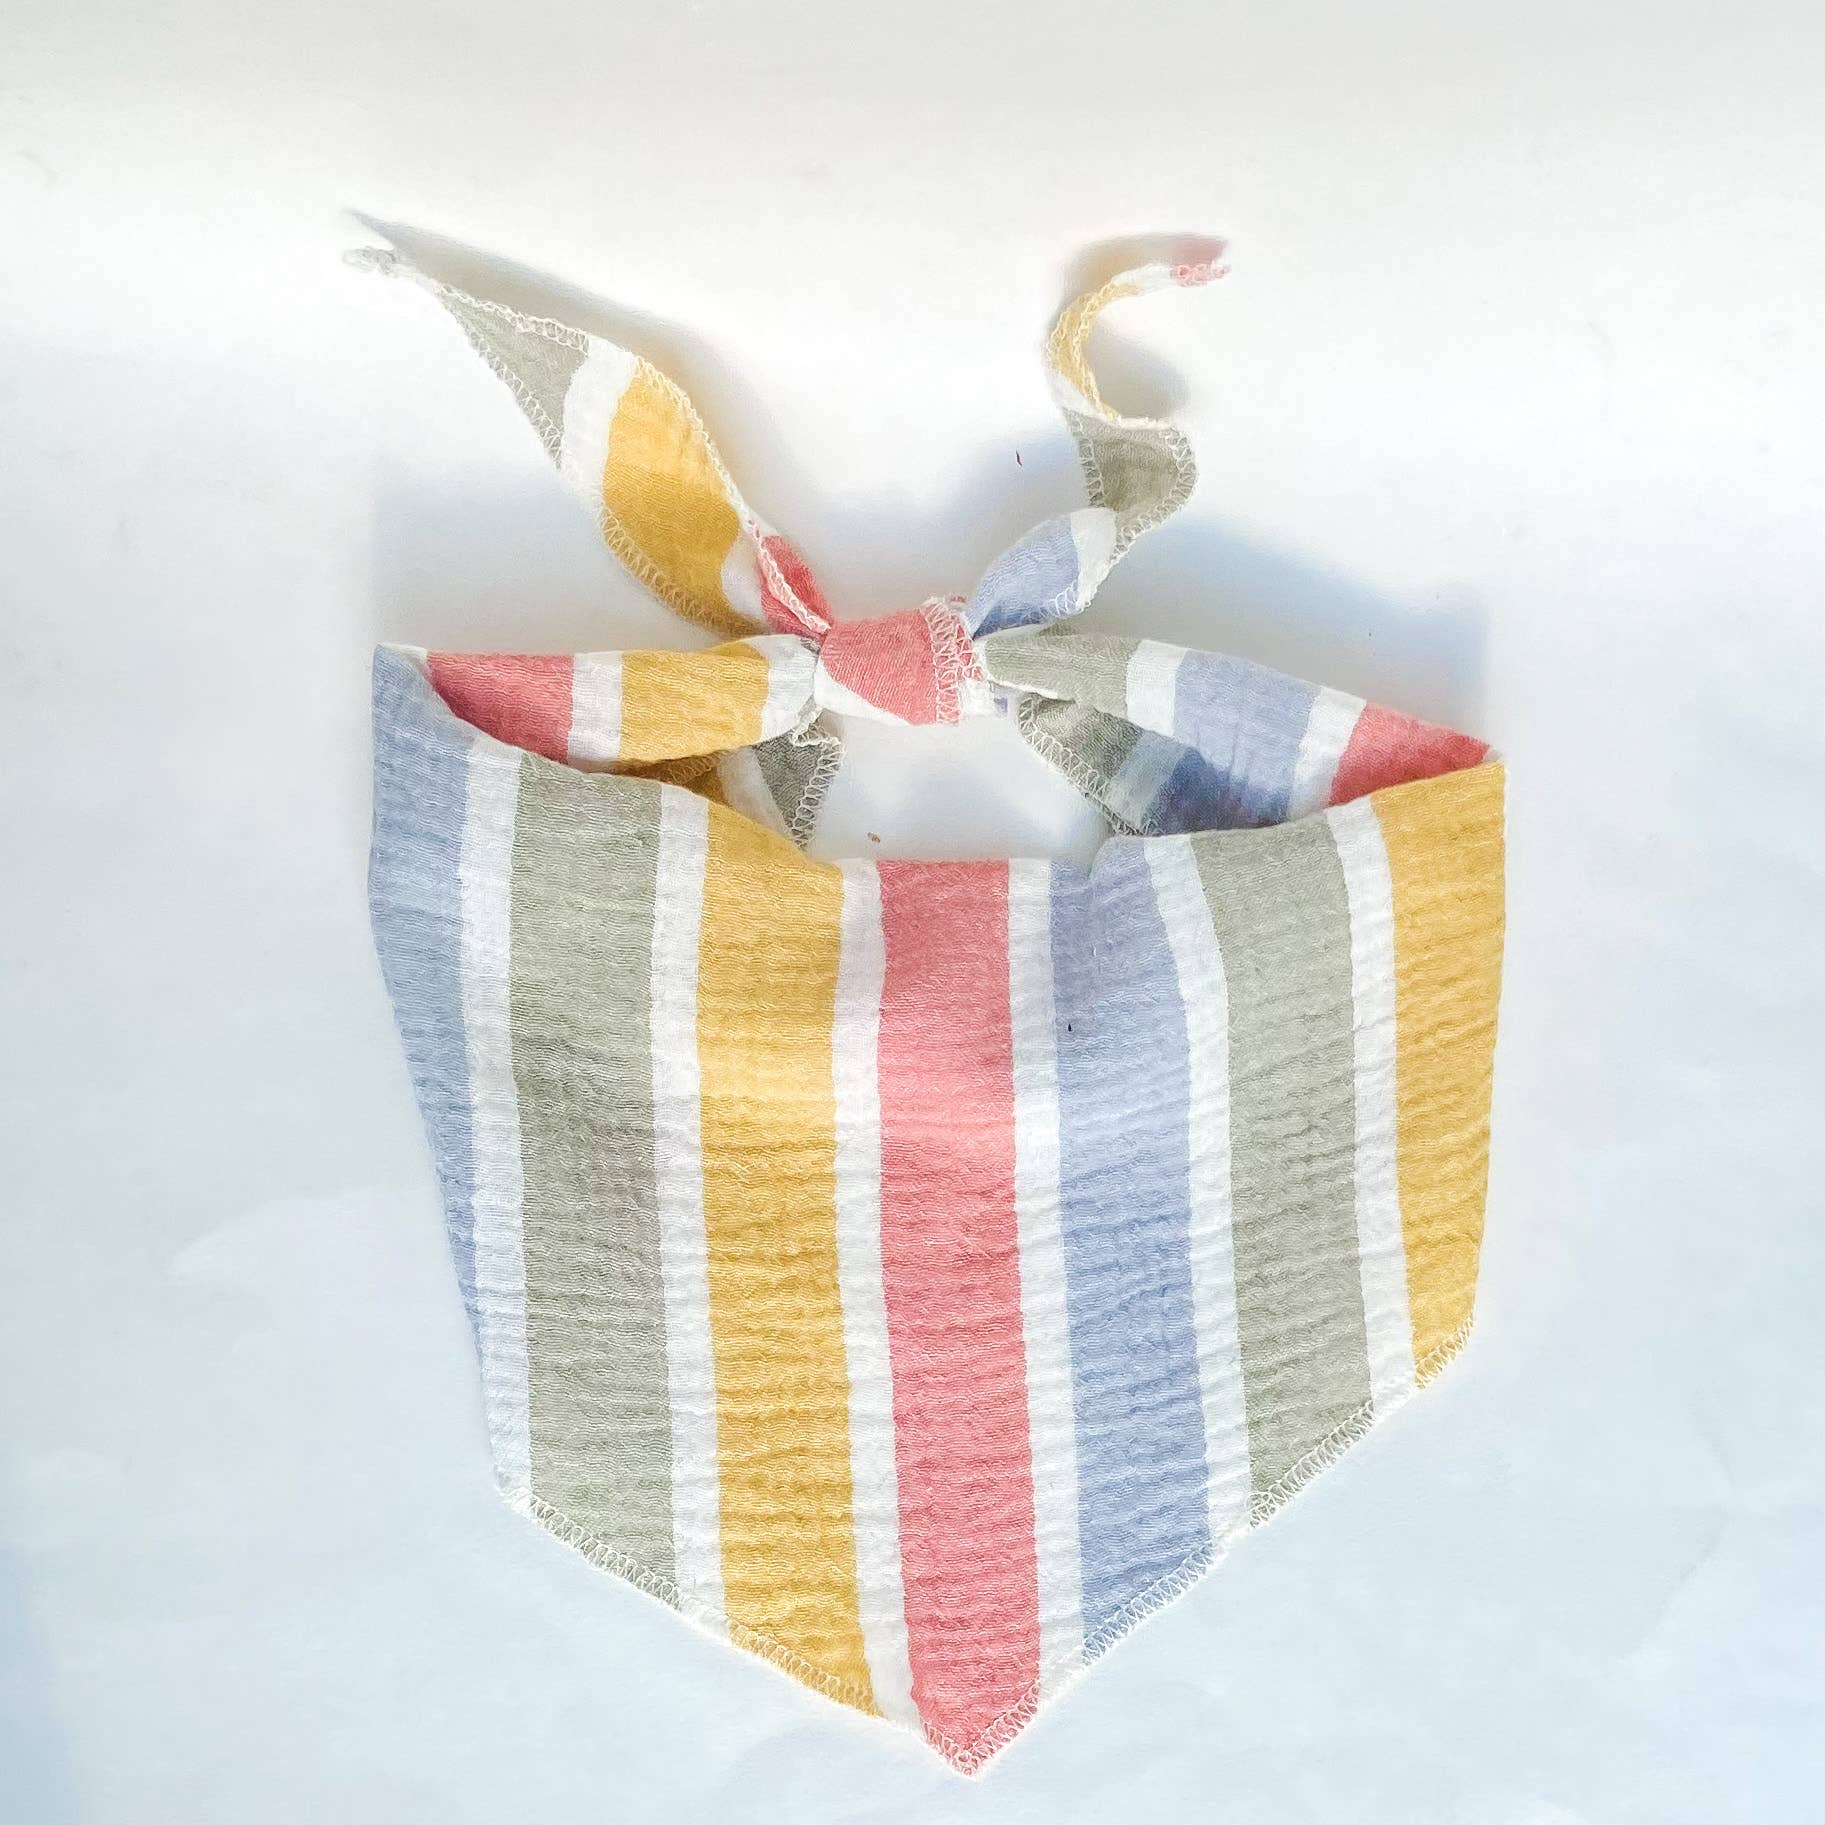 doggish - Muted stripes double gauze dog bandana pet accessory